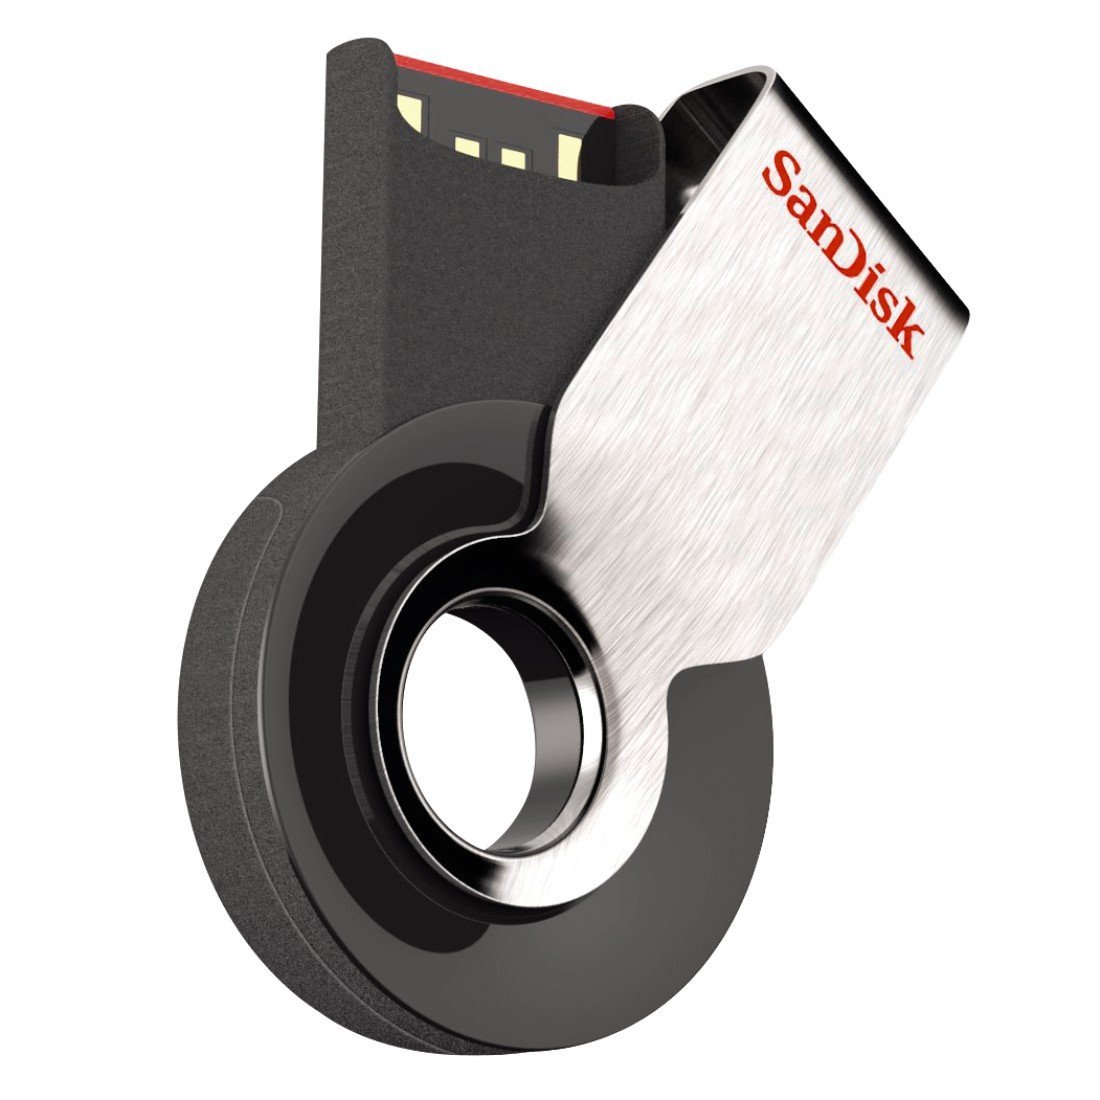 SanDisk Cruzer Orbit, la chiavetta USB circolare da 32 GB